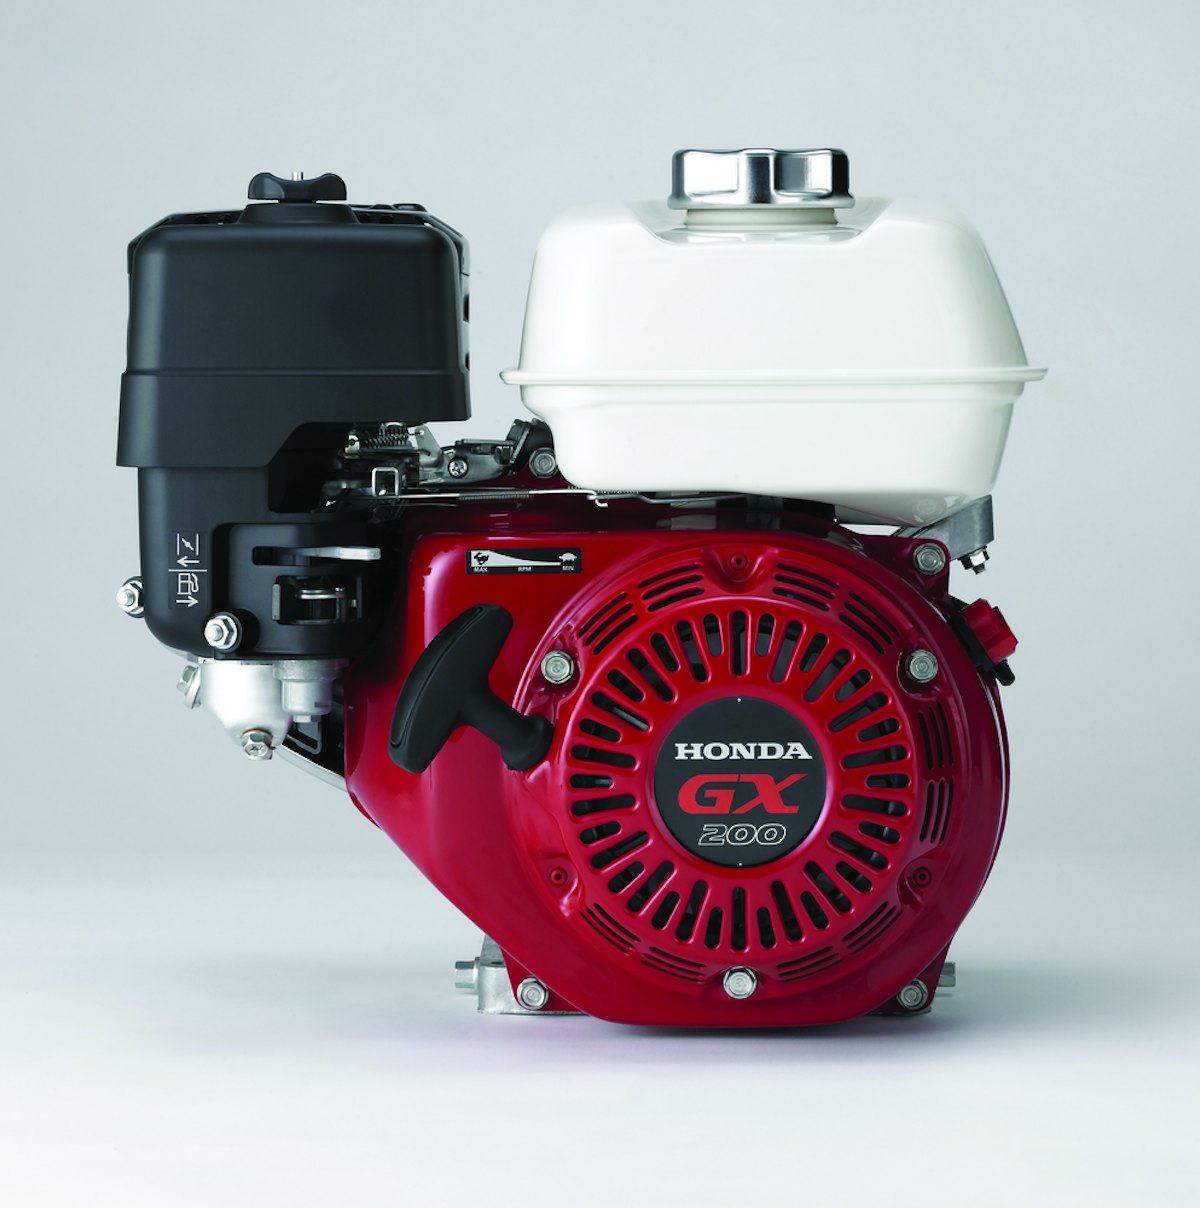 GX Single-Cylinder Horizontal-Shaft Engines From: Honda Engines